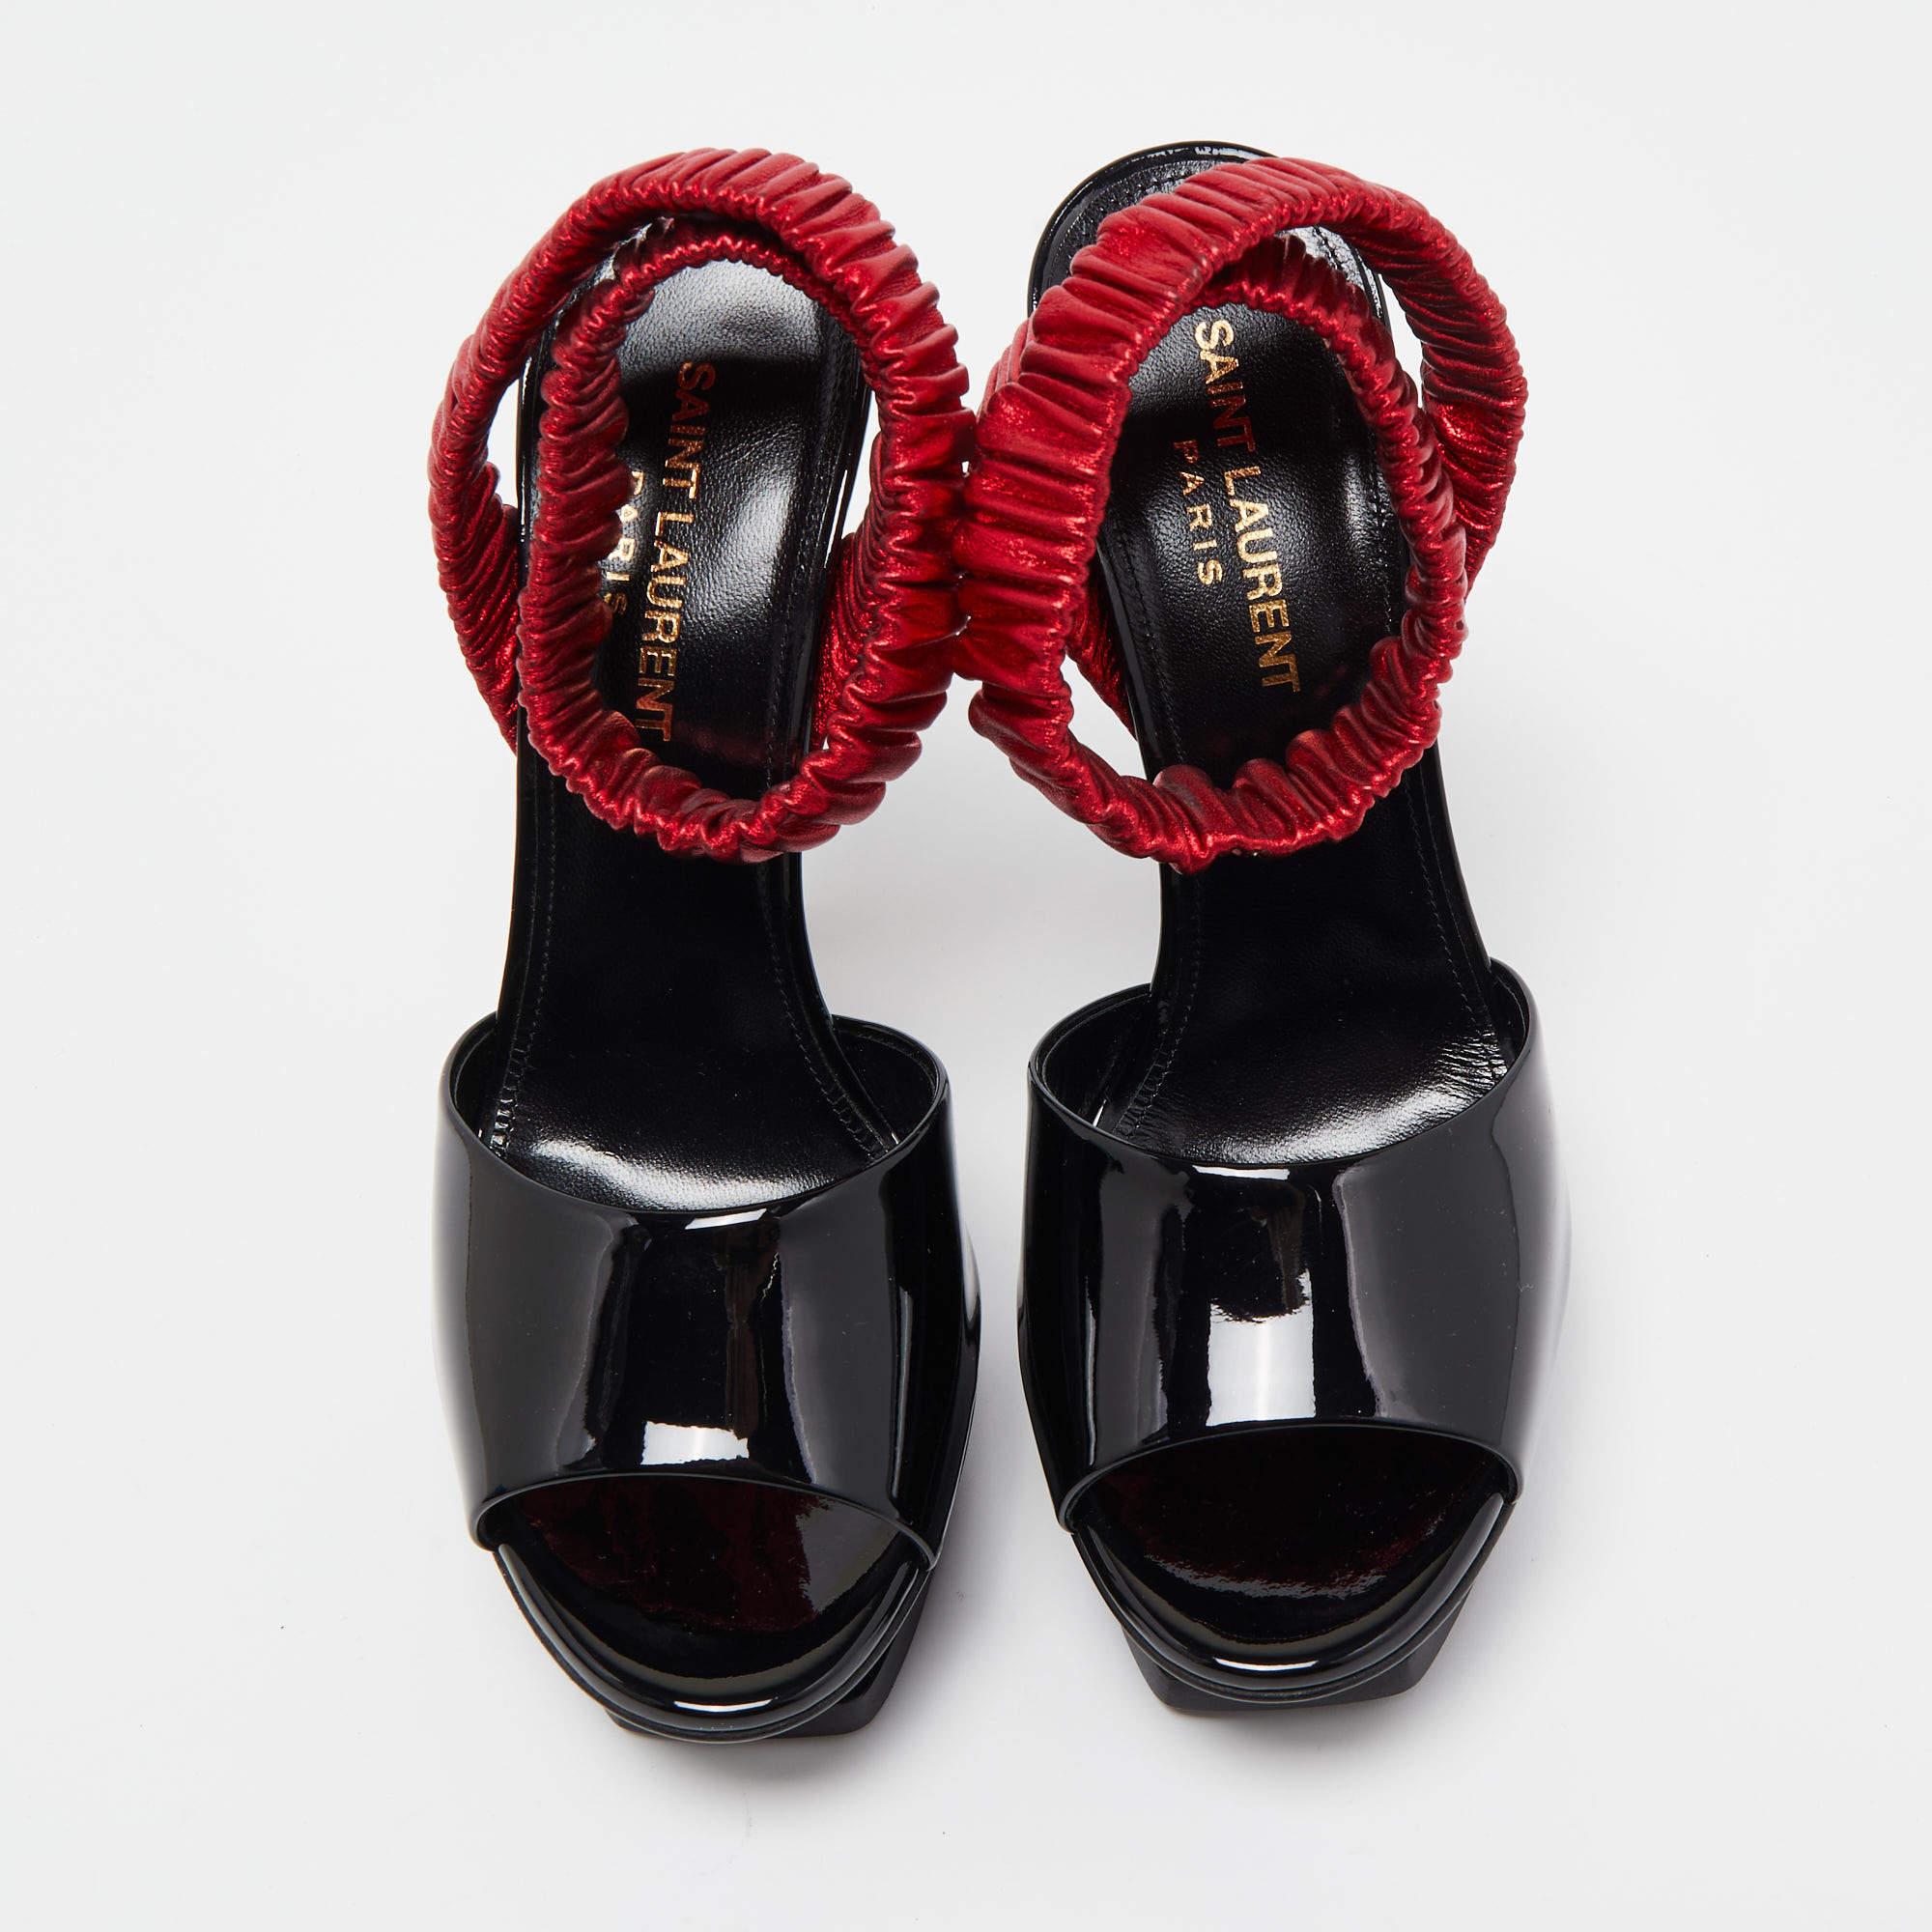 Women's Saint Laurent Black Patent Leather Platform Ankle Wrap Sandals Size 36.5